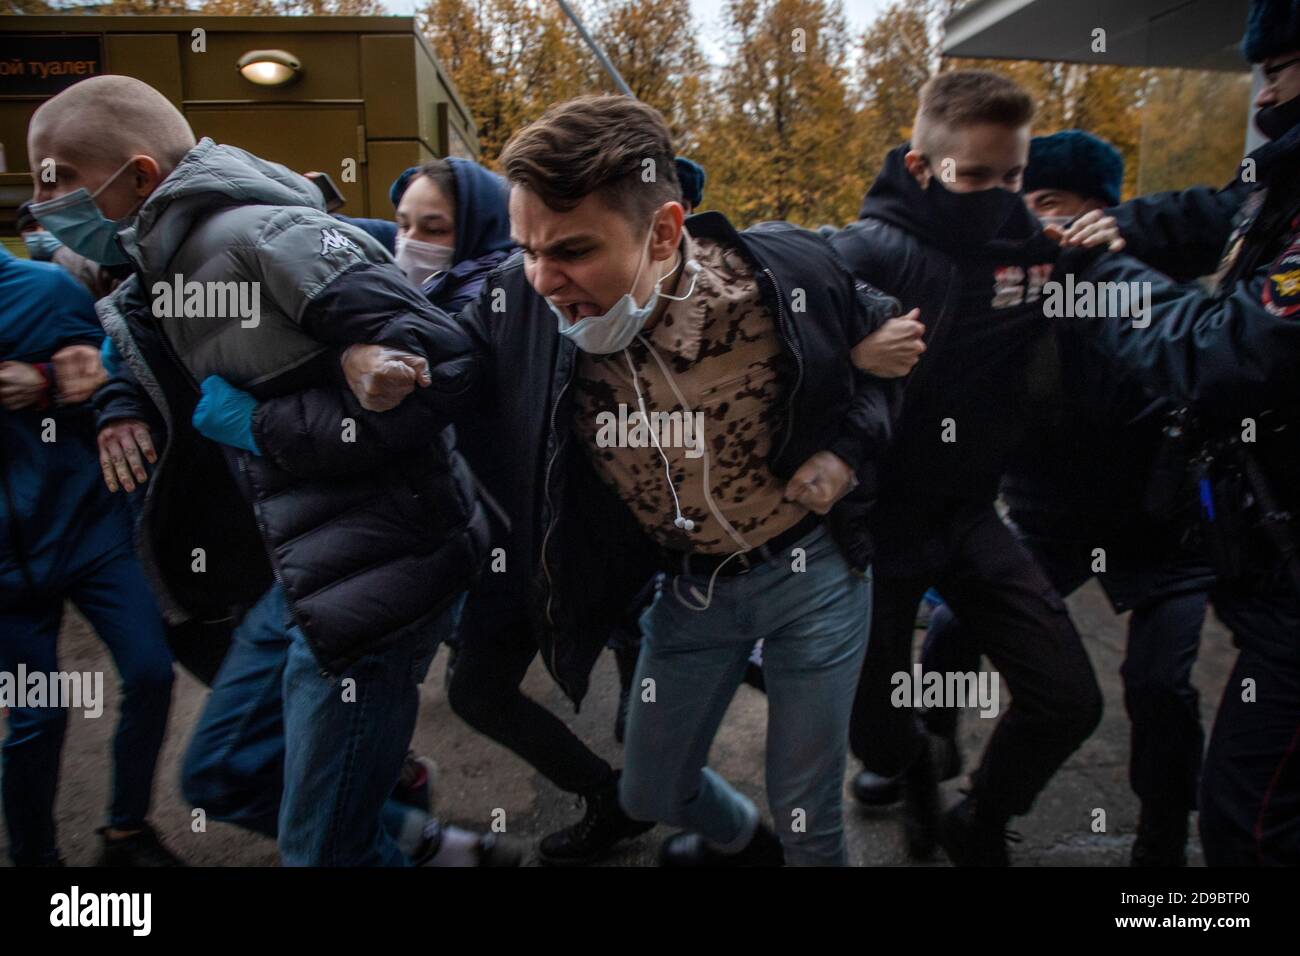 Moscou, Russie. 4 novembre, 2020 jeunes portant un masque facial pour aider à freiner la propagation du coronavirus participent à un rassemblement organisé par des nationalistes et des activistes des groupes politiques d'extrême droite, à l'occasion de la Journée nationale de l'unité à Moscou, en Russie Banque D'Images